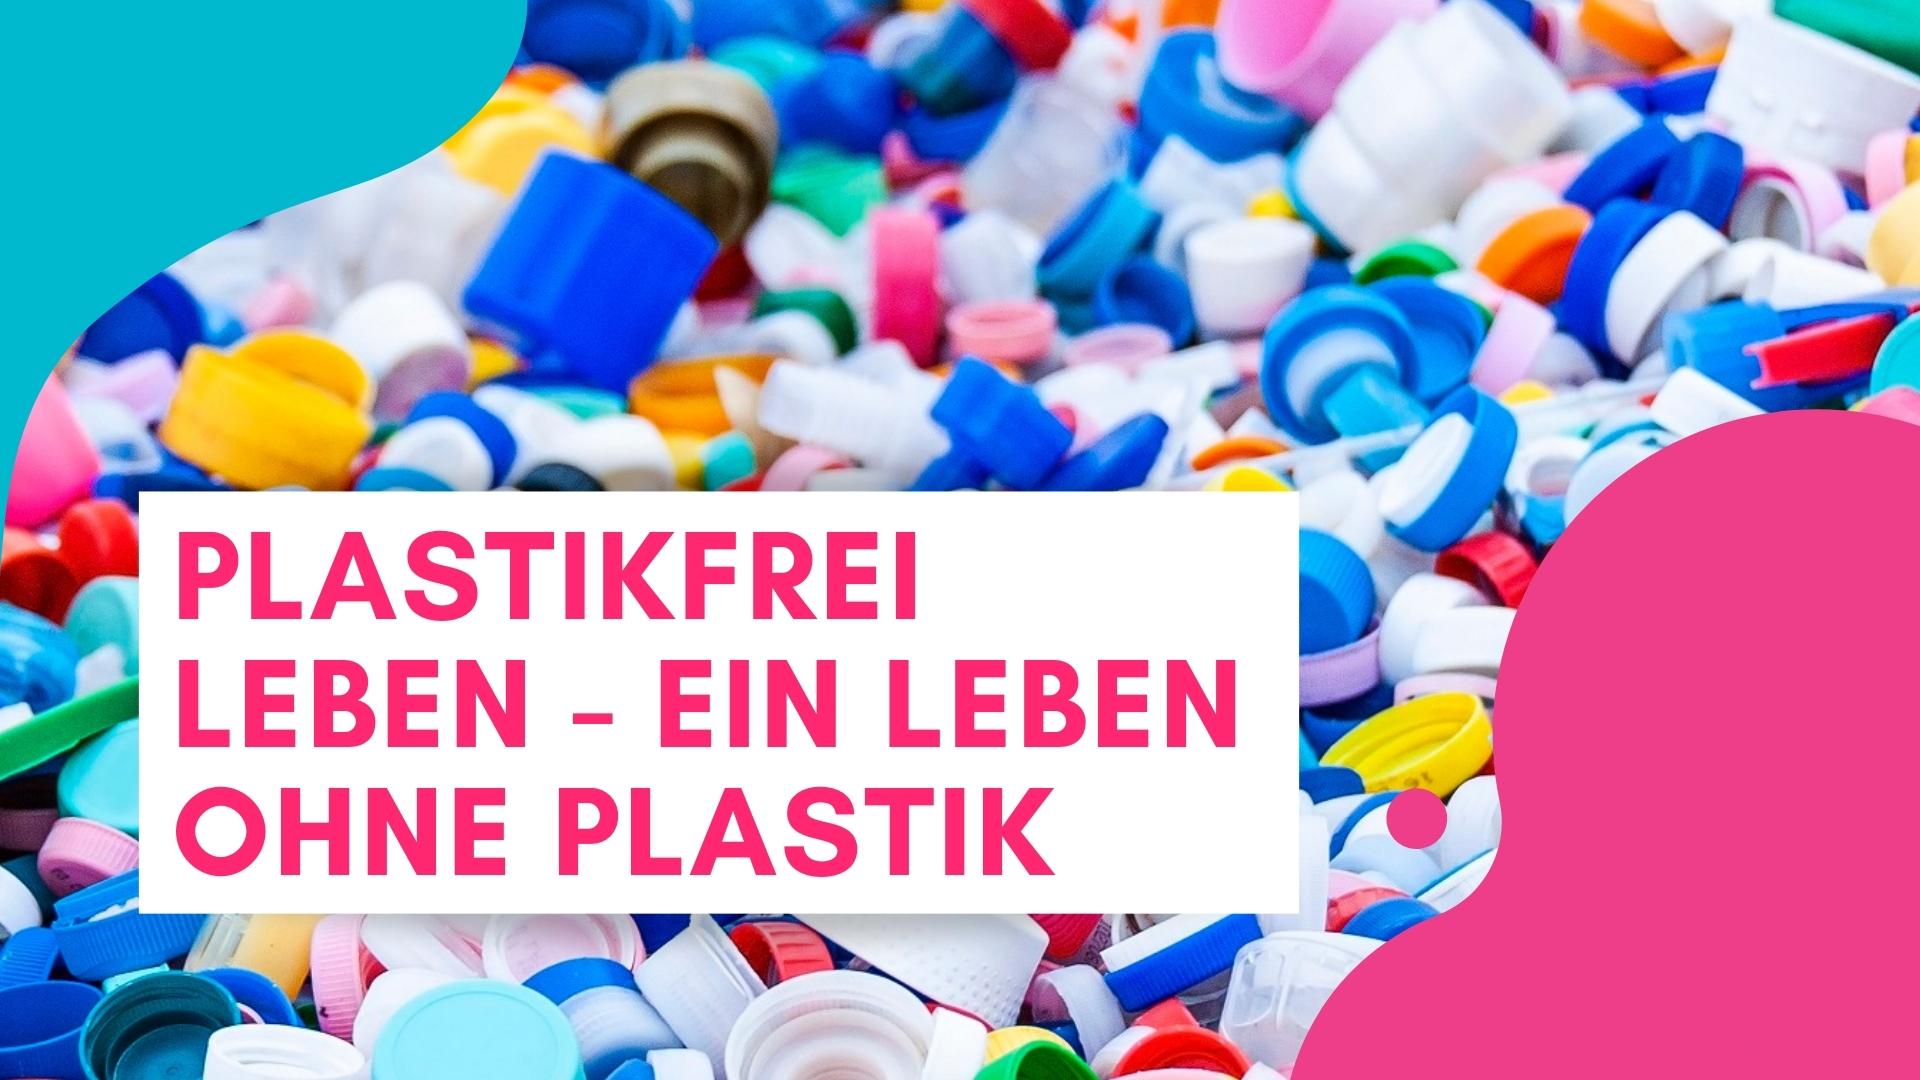 Plastikfrei leben – ein Leben ohne Plastik